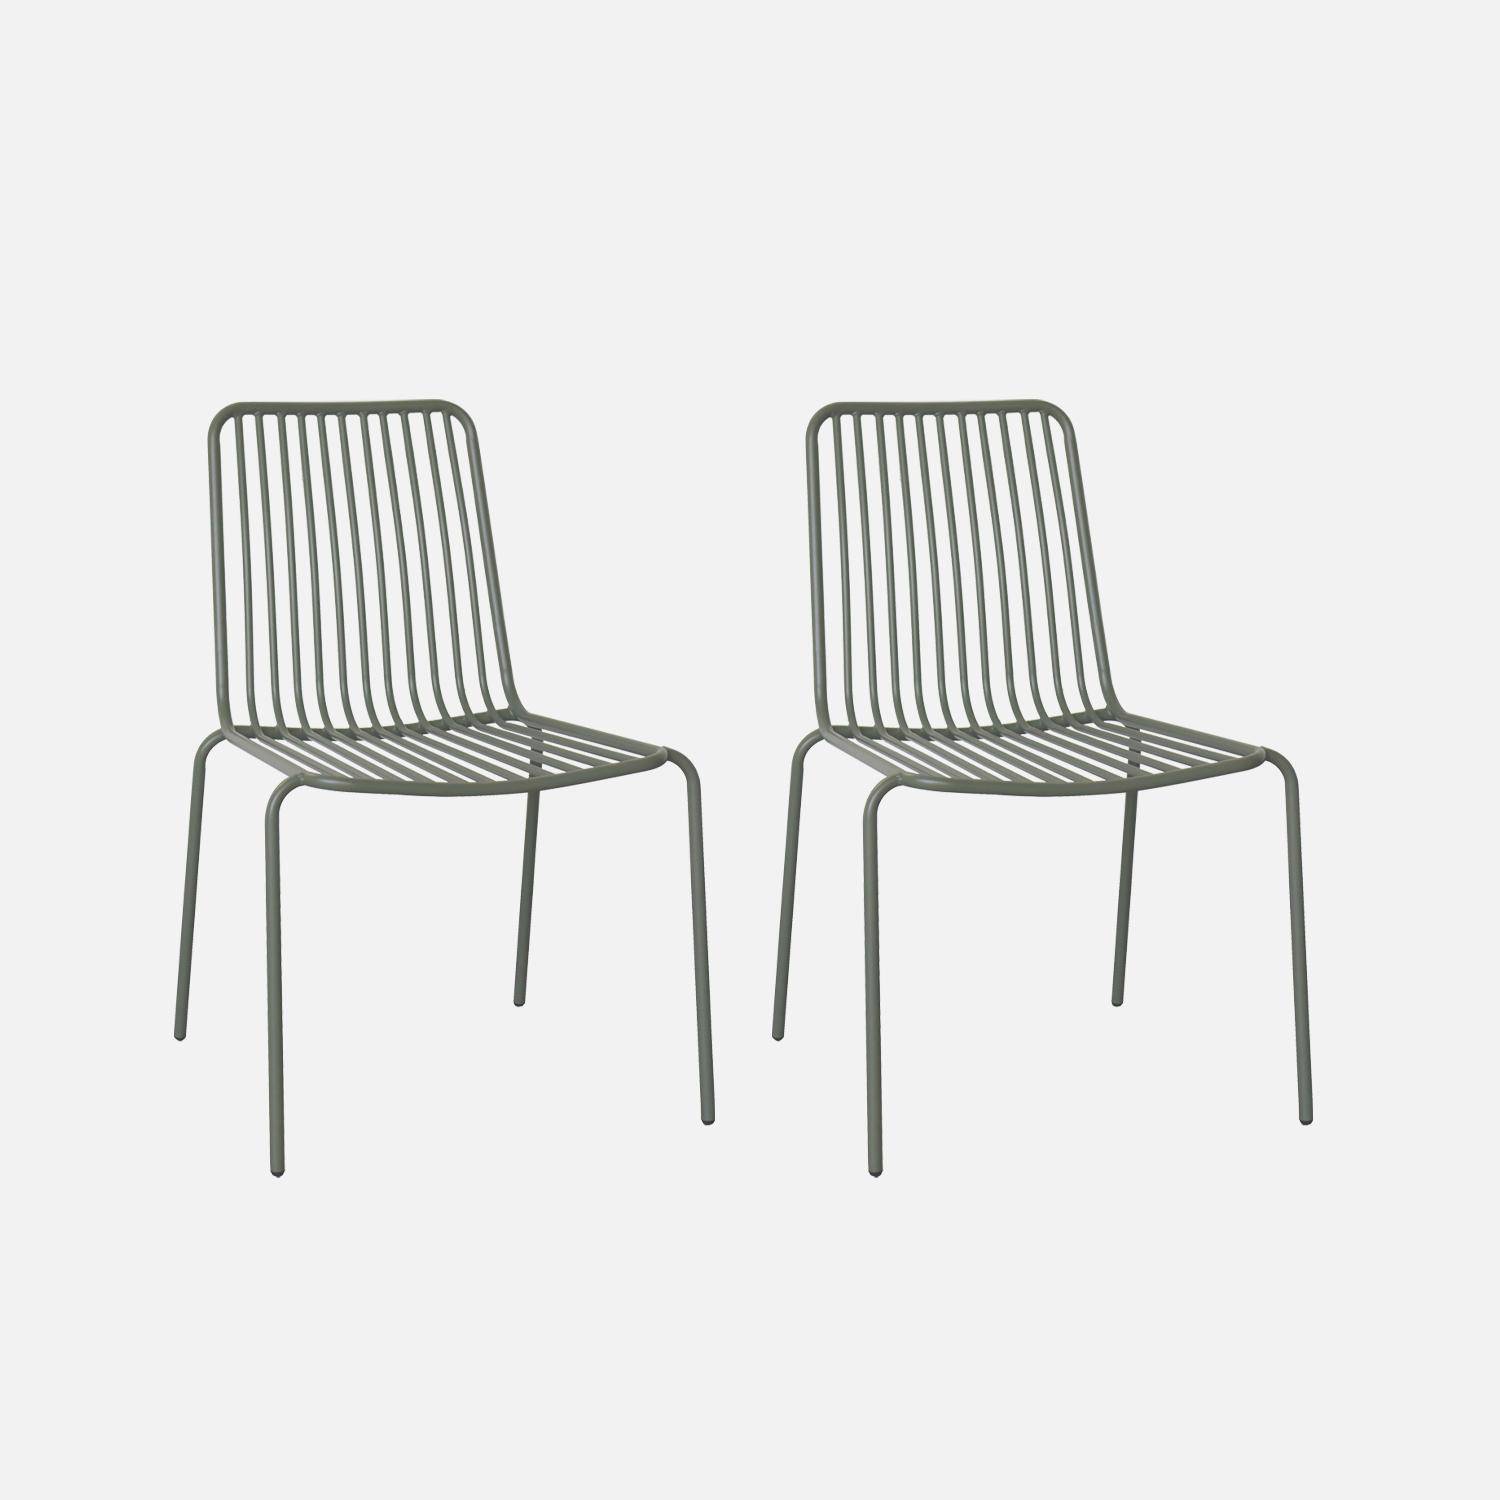 Lot de 2 chaises de jardin en acier savane, empilables, design linéaire ,sweeek,Photo1